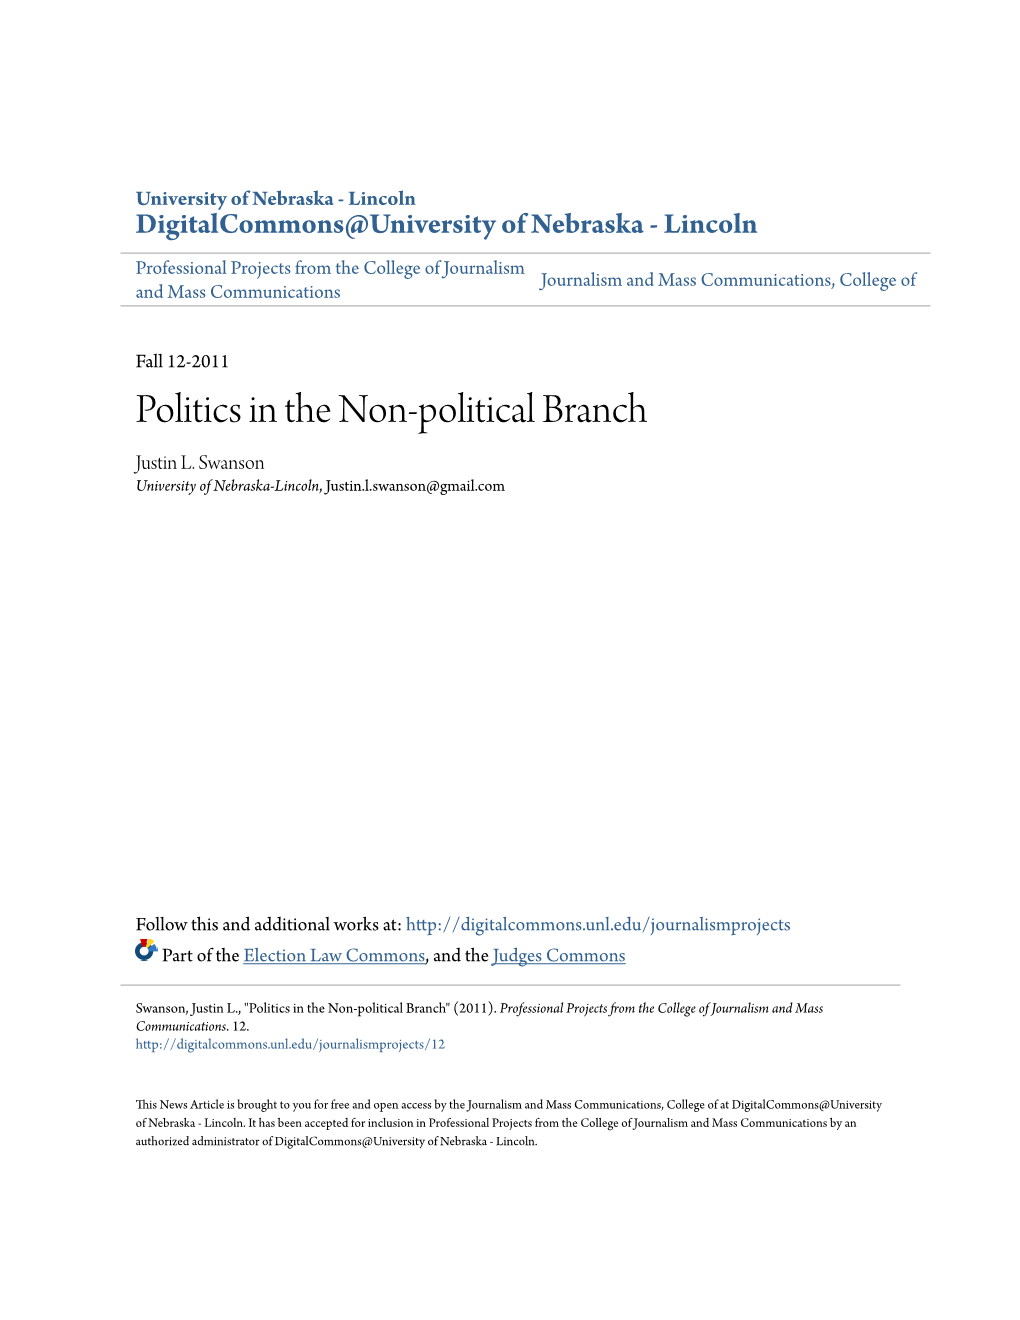 Politics in the Non-Political Branch Justin L